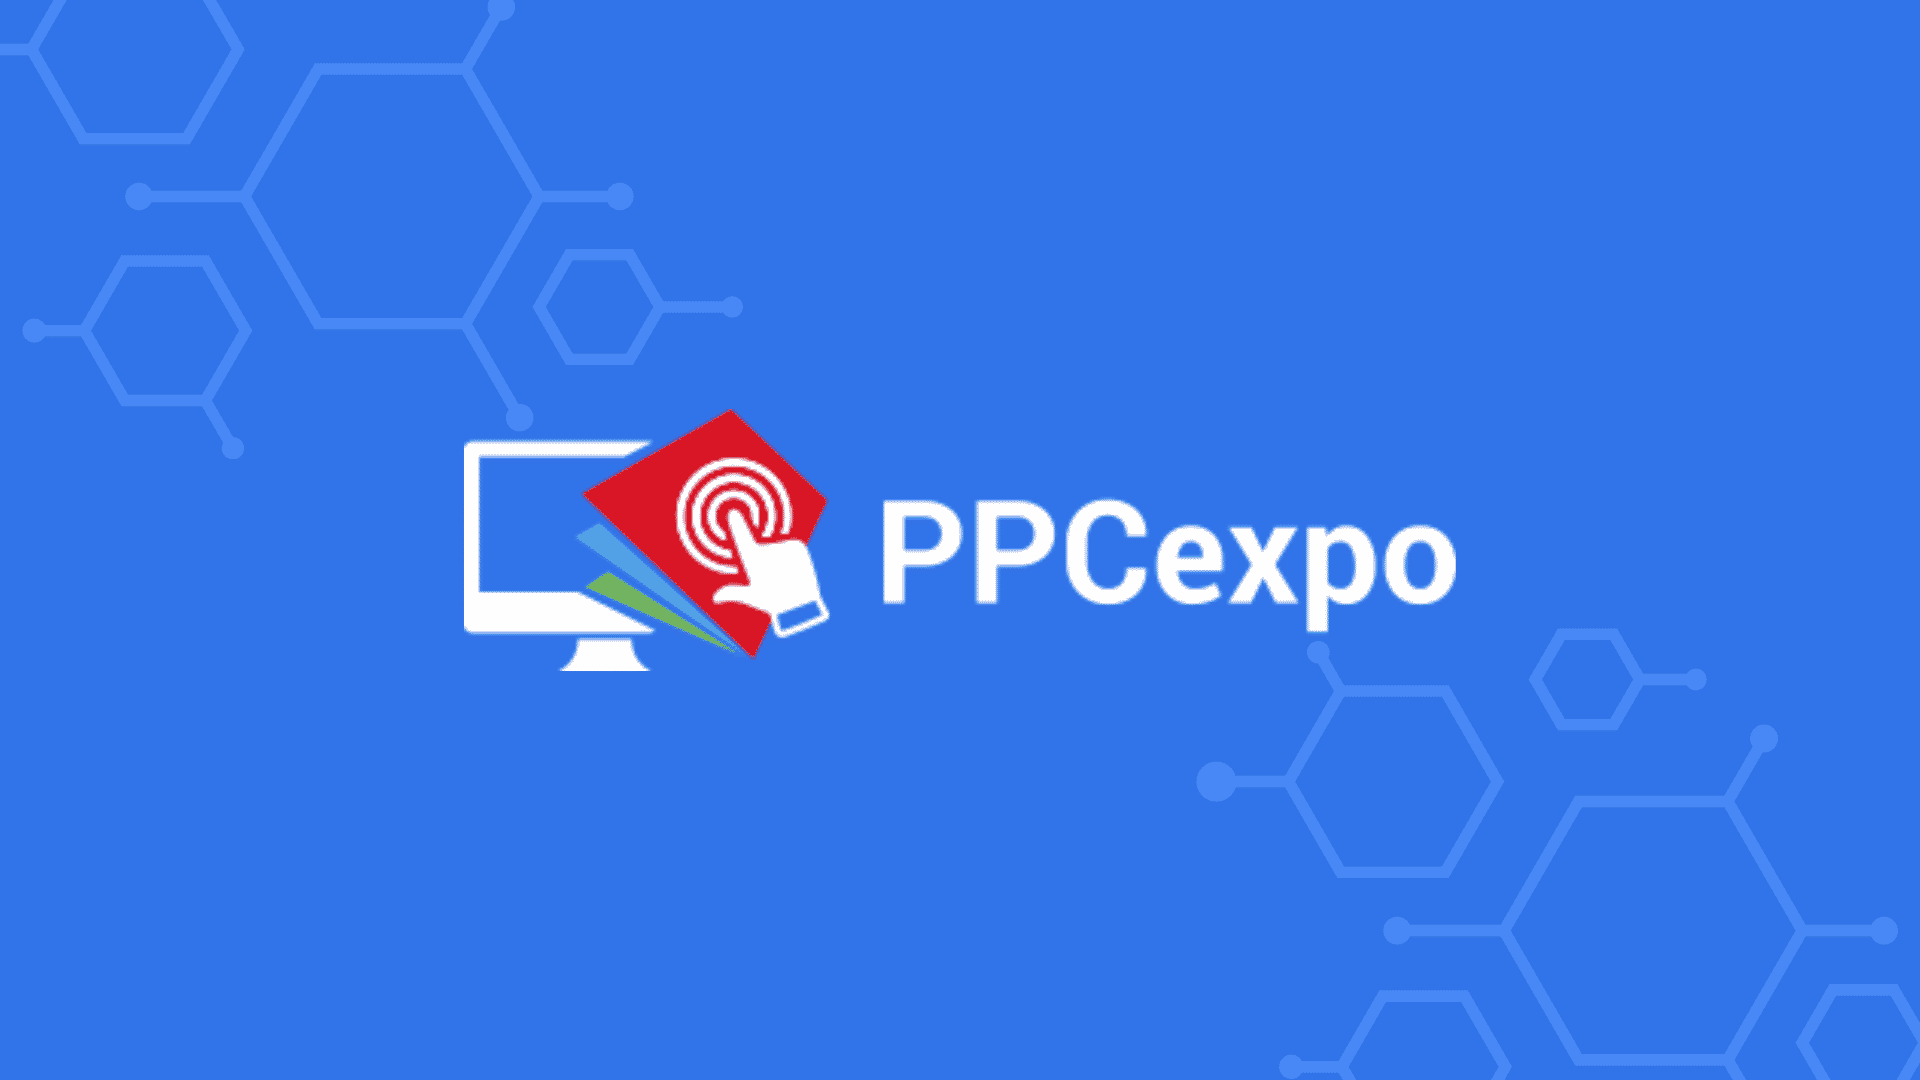 PPCexpo Logo